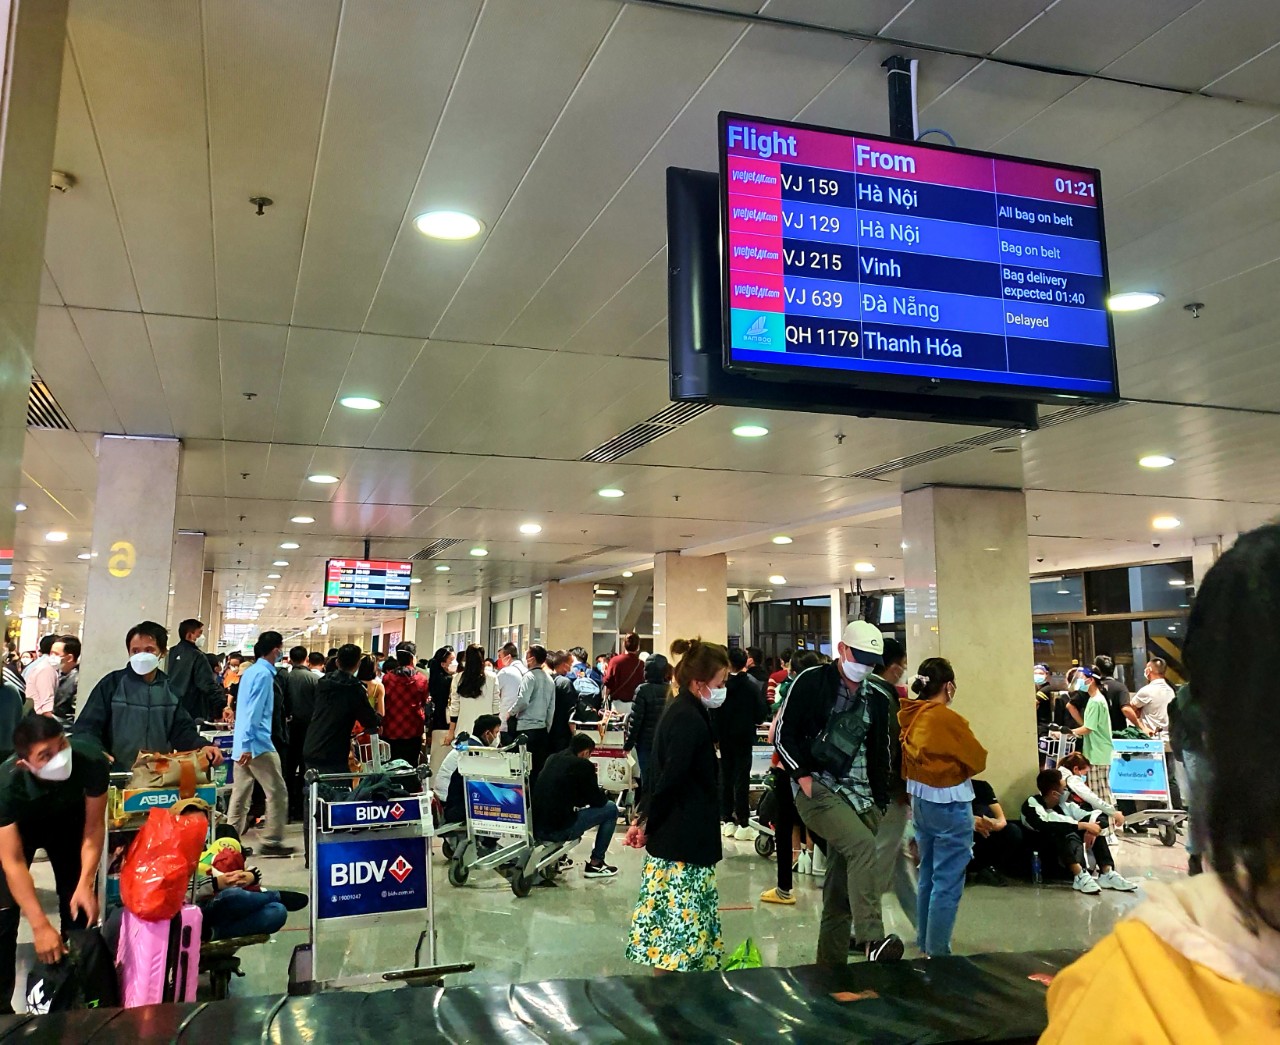 Hành khách vạ vật ở sân bay Tân Sơn Nhất rạng sáng 7-2 chờ lấy hành lý, gọi xe - Ảnh 8.